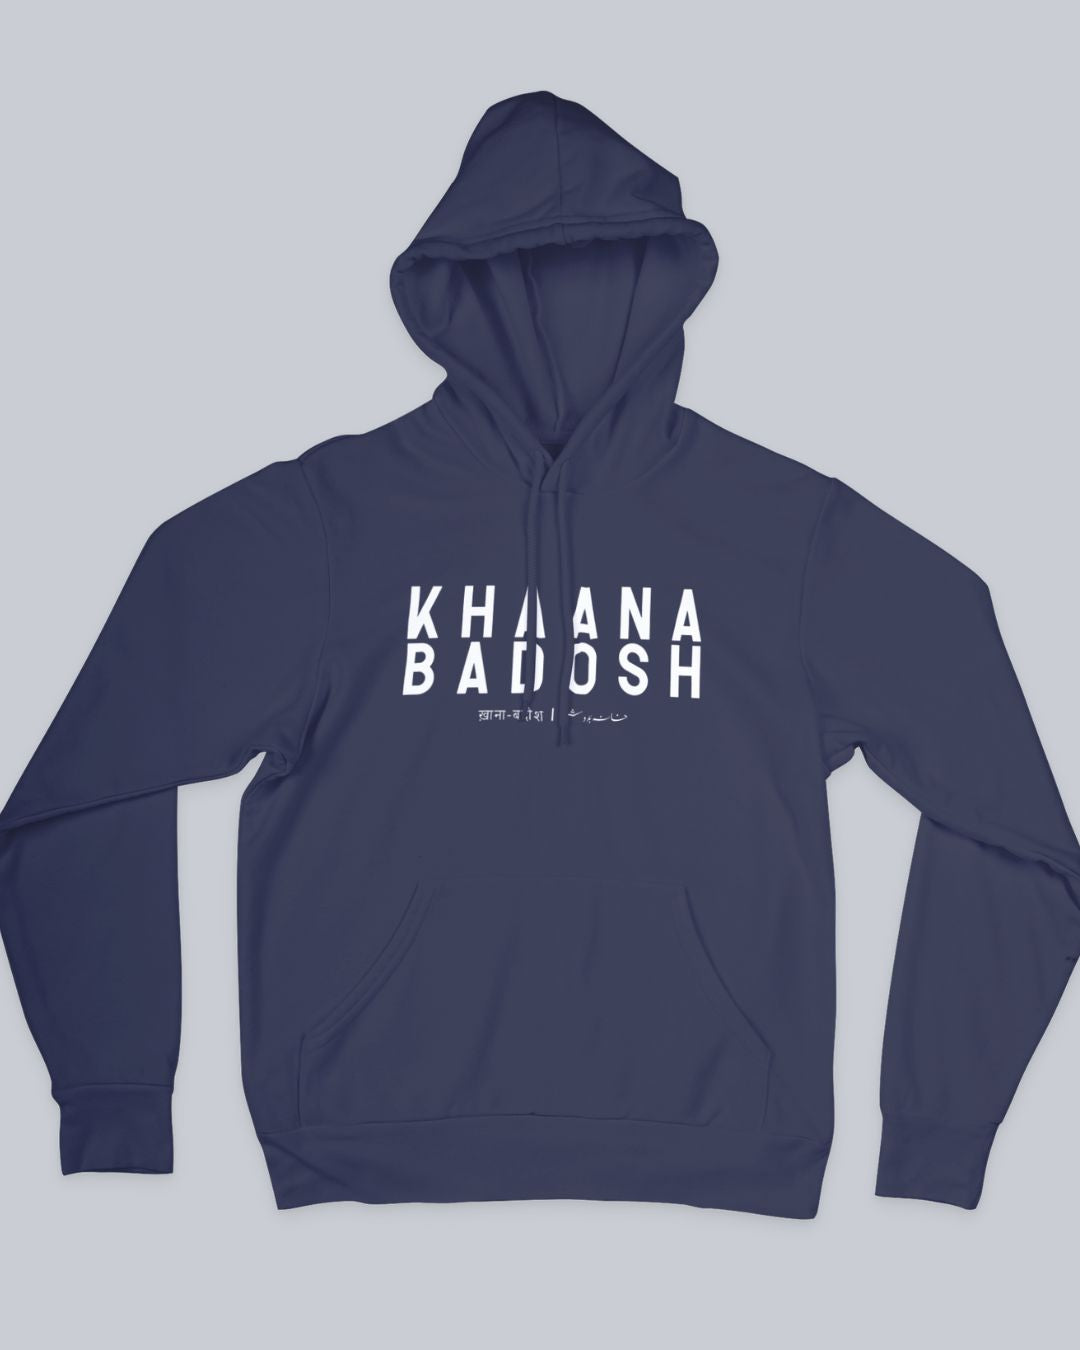 Khaana Badosh Unisex Hoodie available in Blue, Green Maroon, Black & White.   Urdu Hoodie, Poetry Hoodie, Shayari Hoodie, Rekhta Hoodie, Sukhanvar Merchandise, Rekhta Store Merchandise.